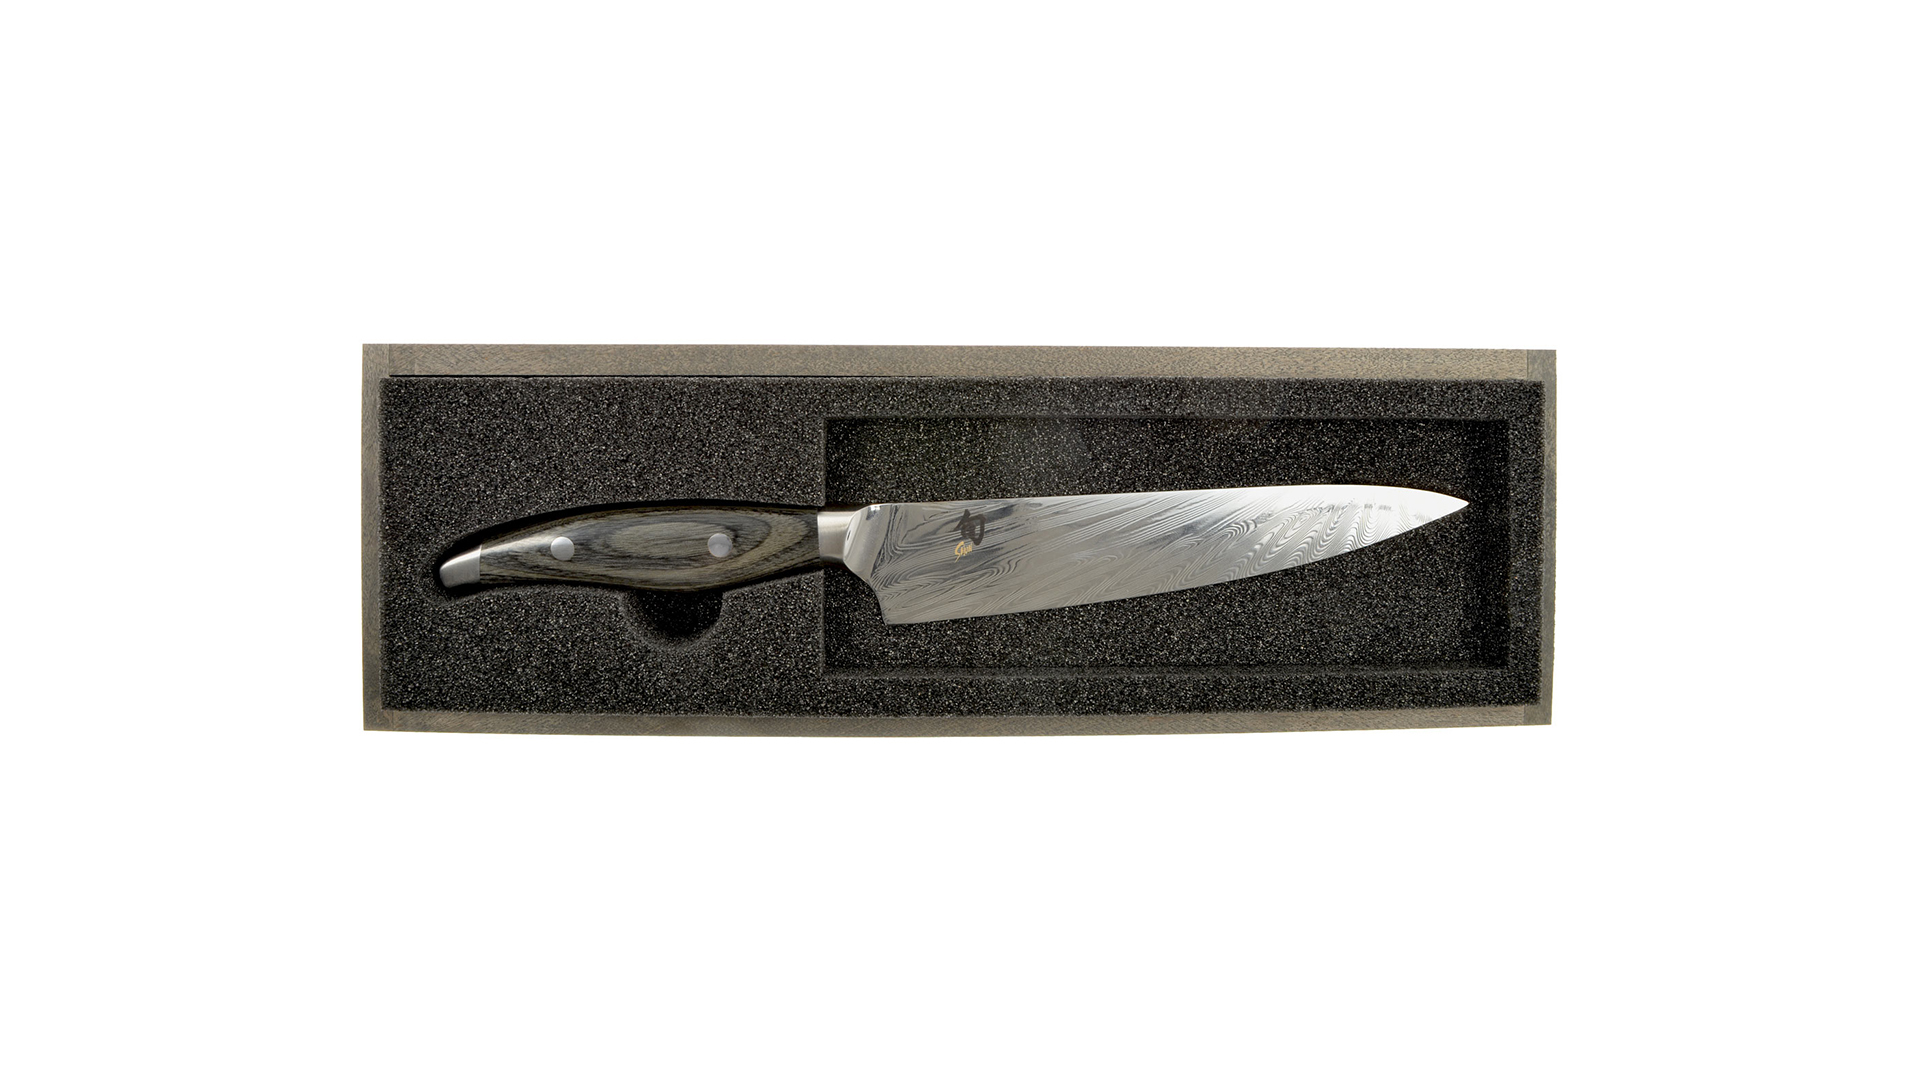 Нож кухонный универсальный KAI Шан Нагарэ 15 см